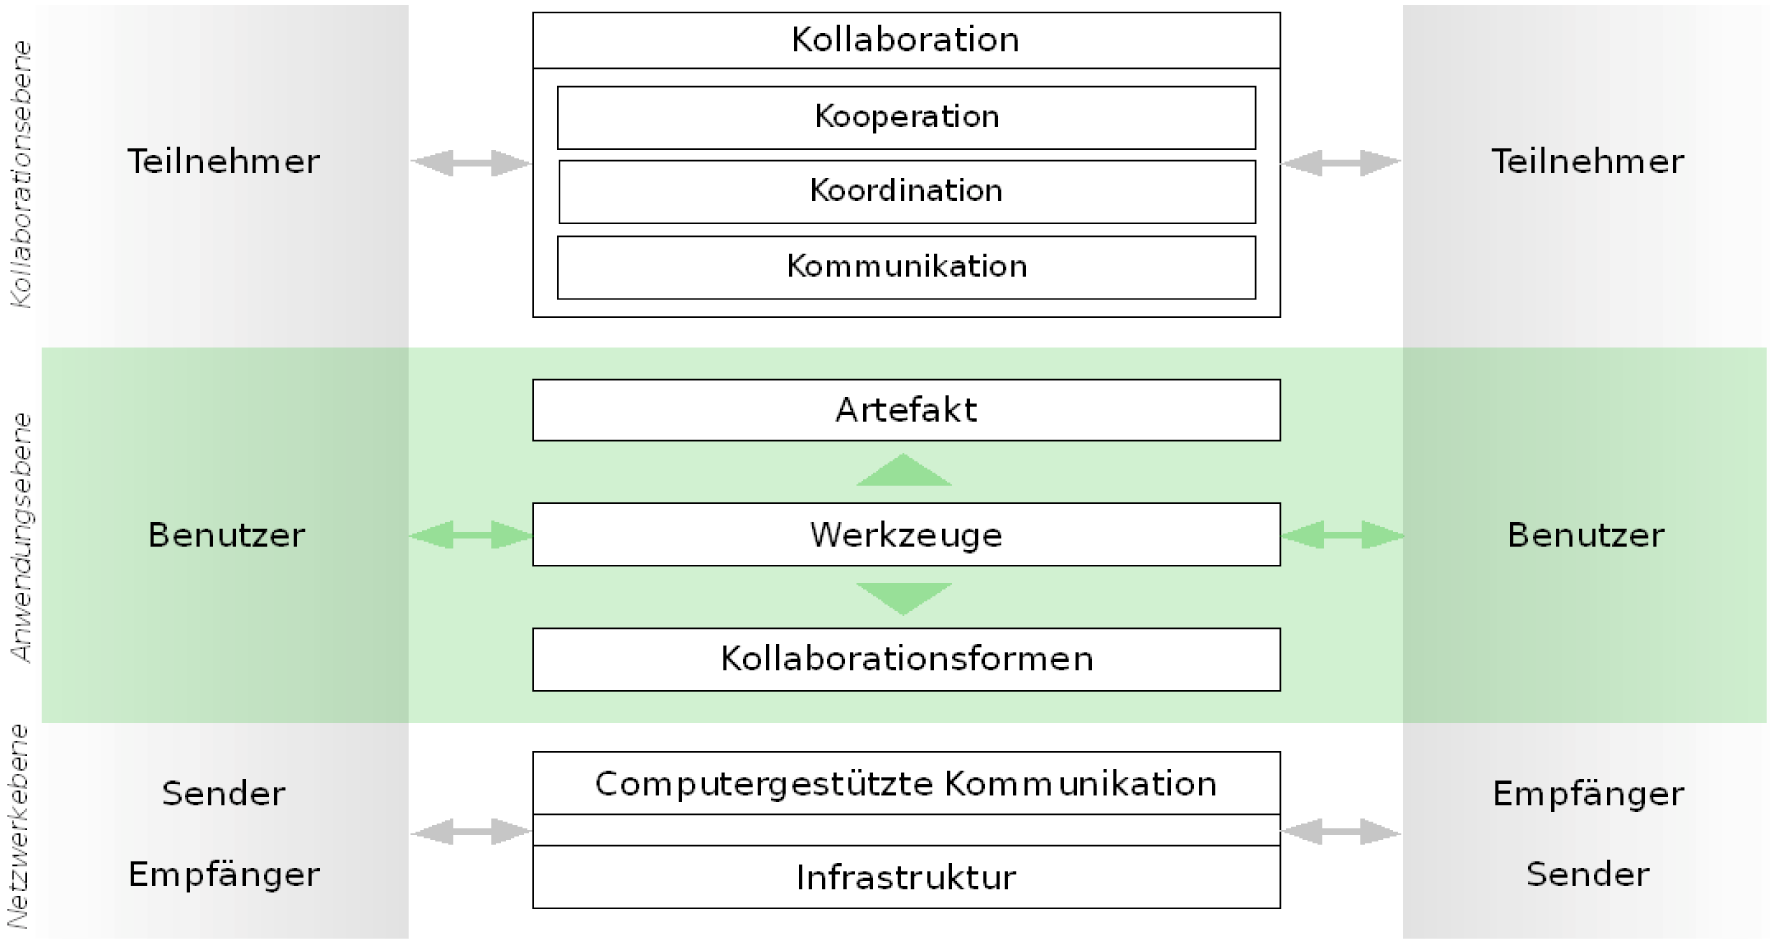 192 Werkzeug implementiert dazu verschiedene Formen der Kollaboration, also virtuelle Kollaborationsmuster, wie z. B. das Kommentieren und Bewerten.